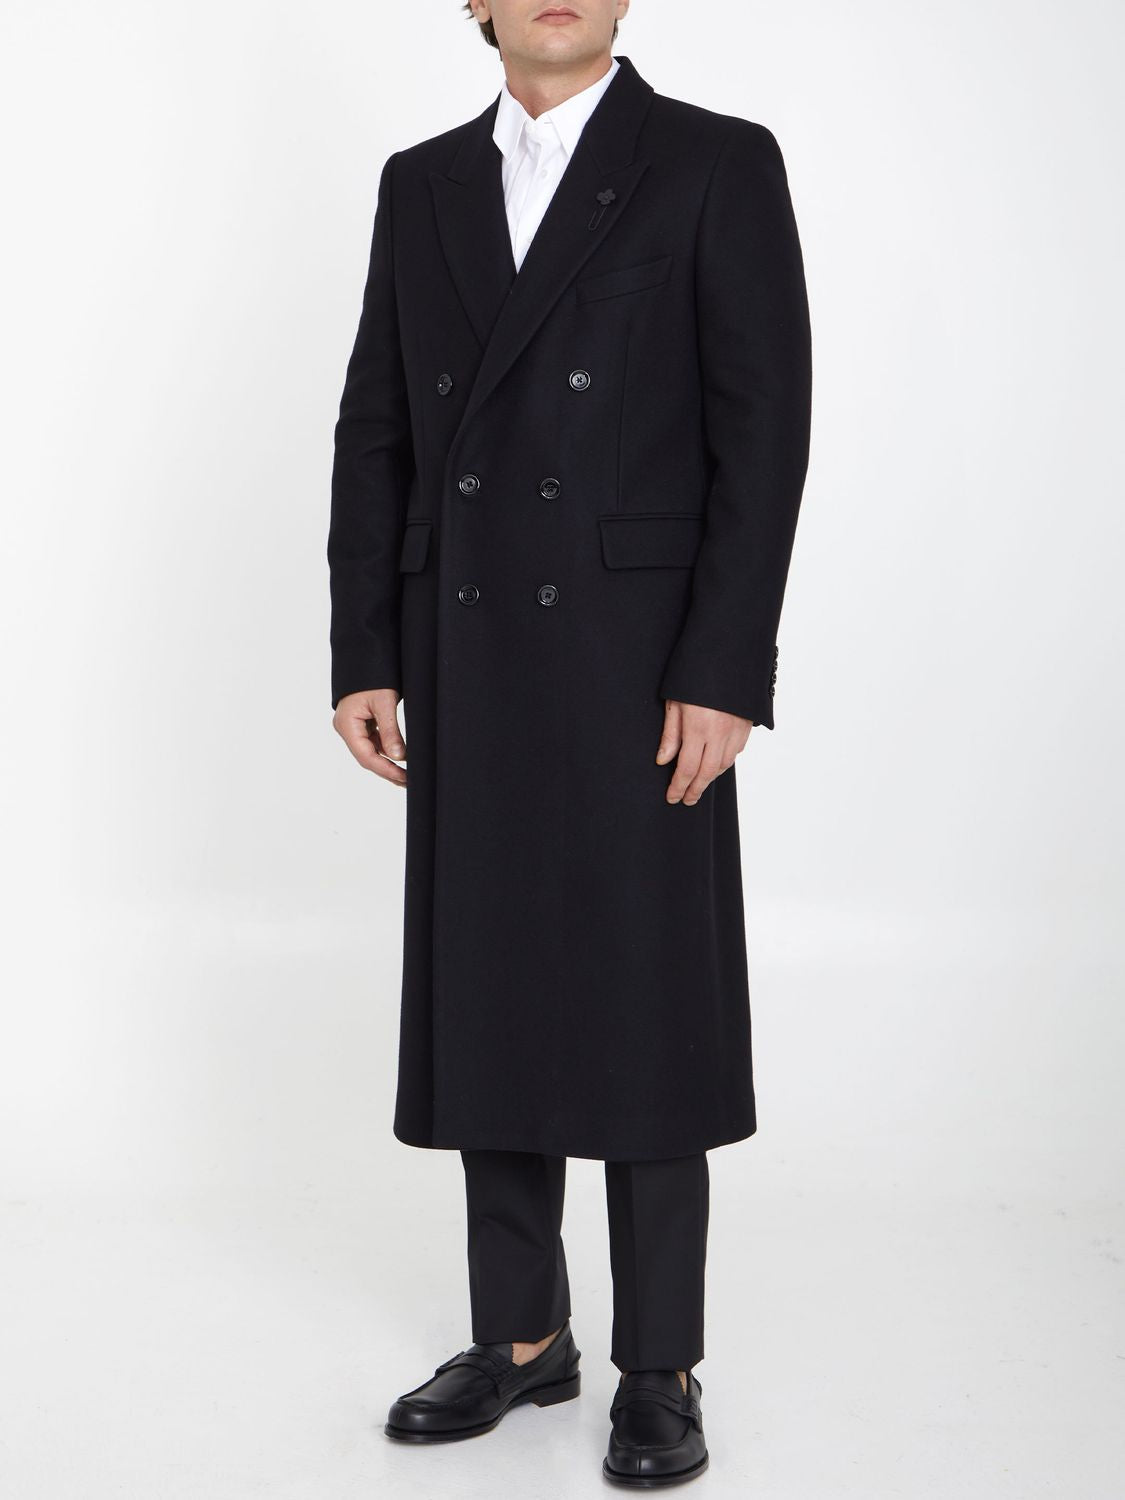 LARDINI Men's Double-Breasted Black Wool Blend Jacket